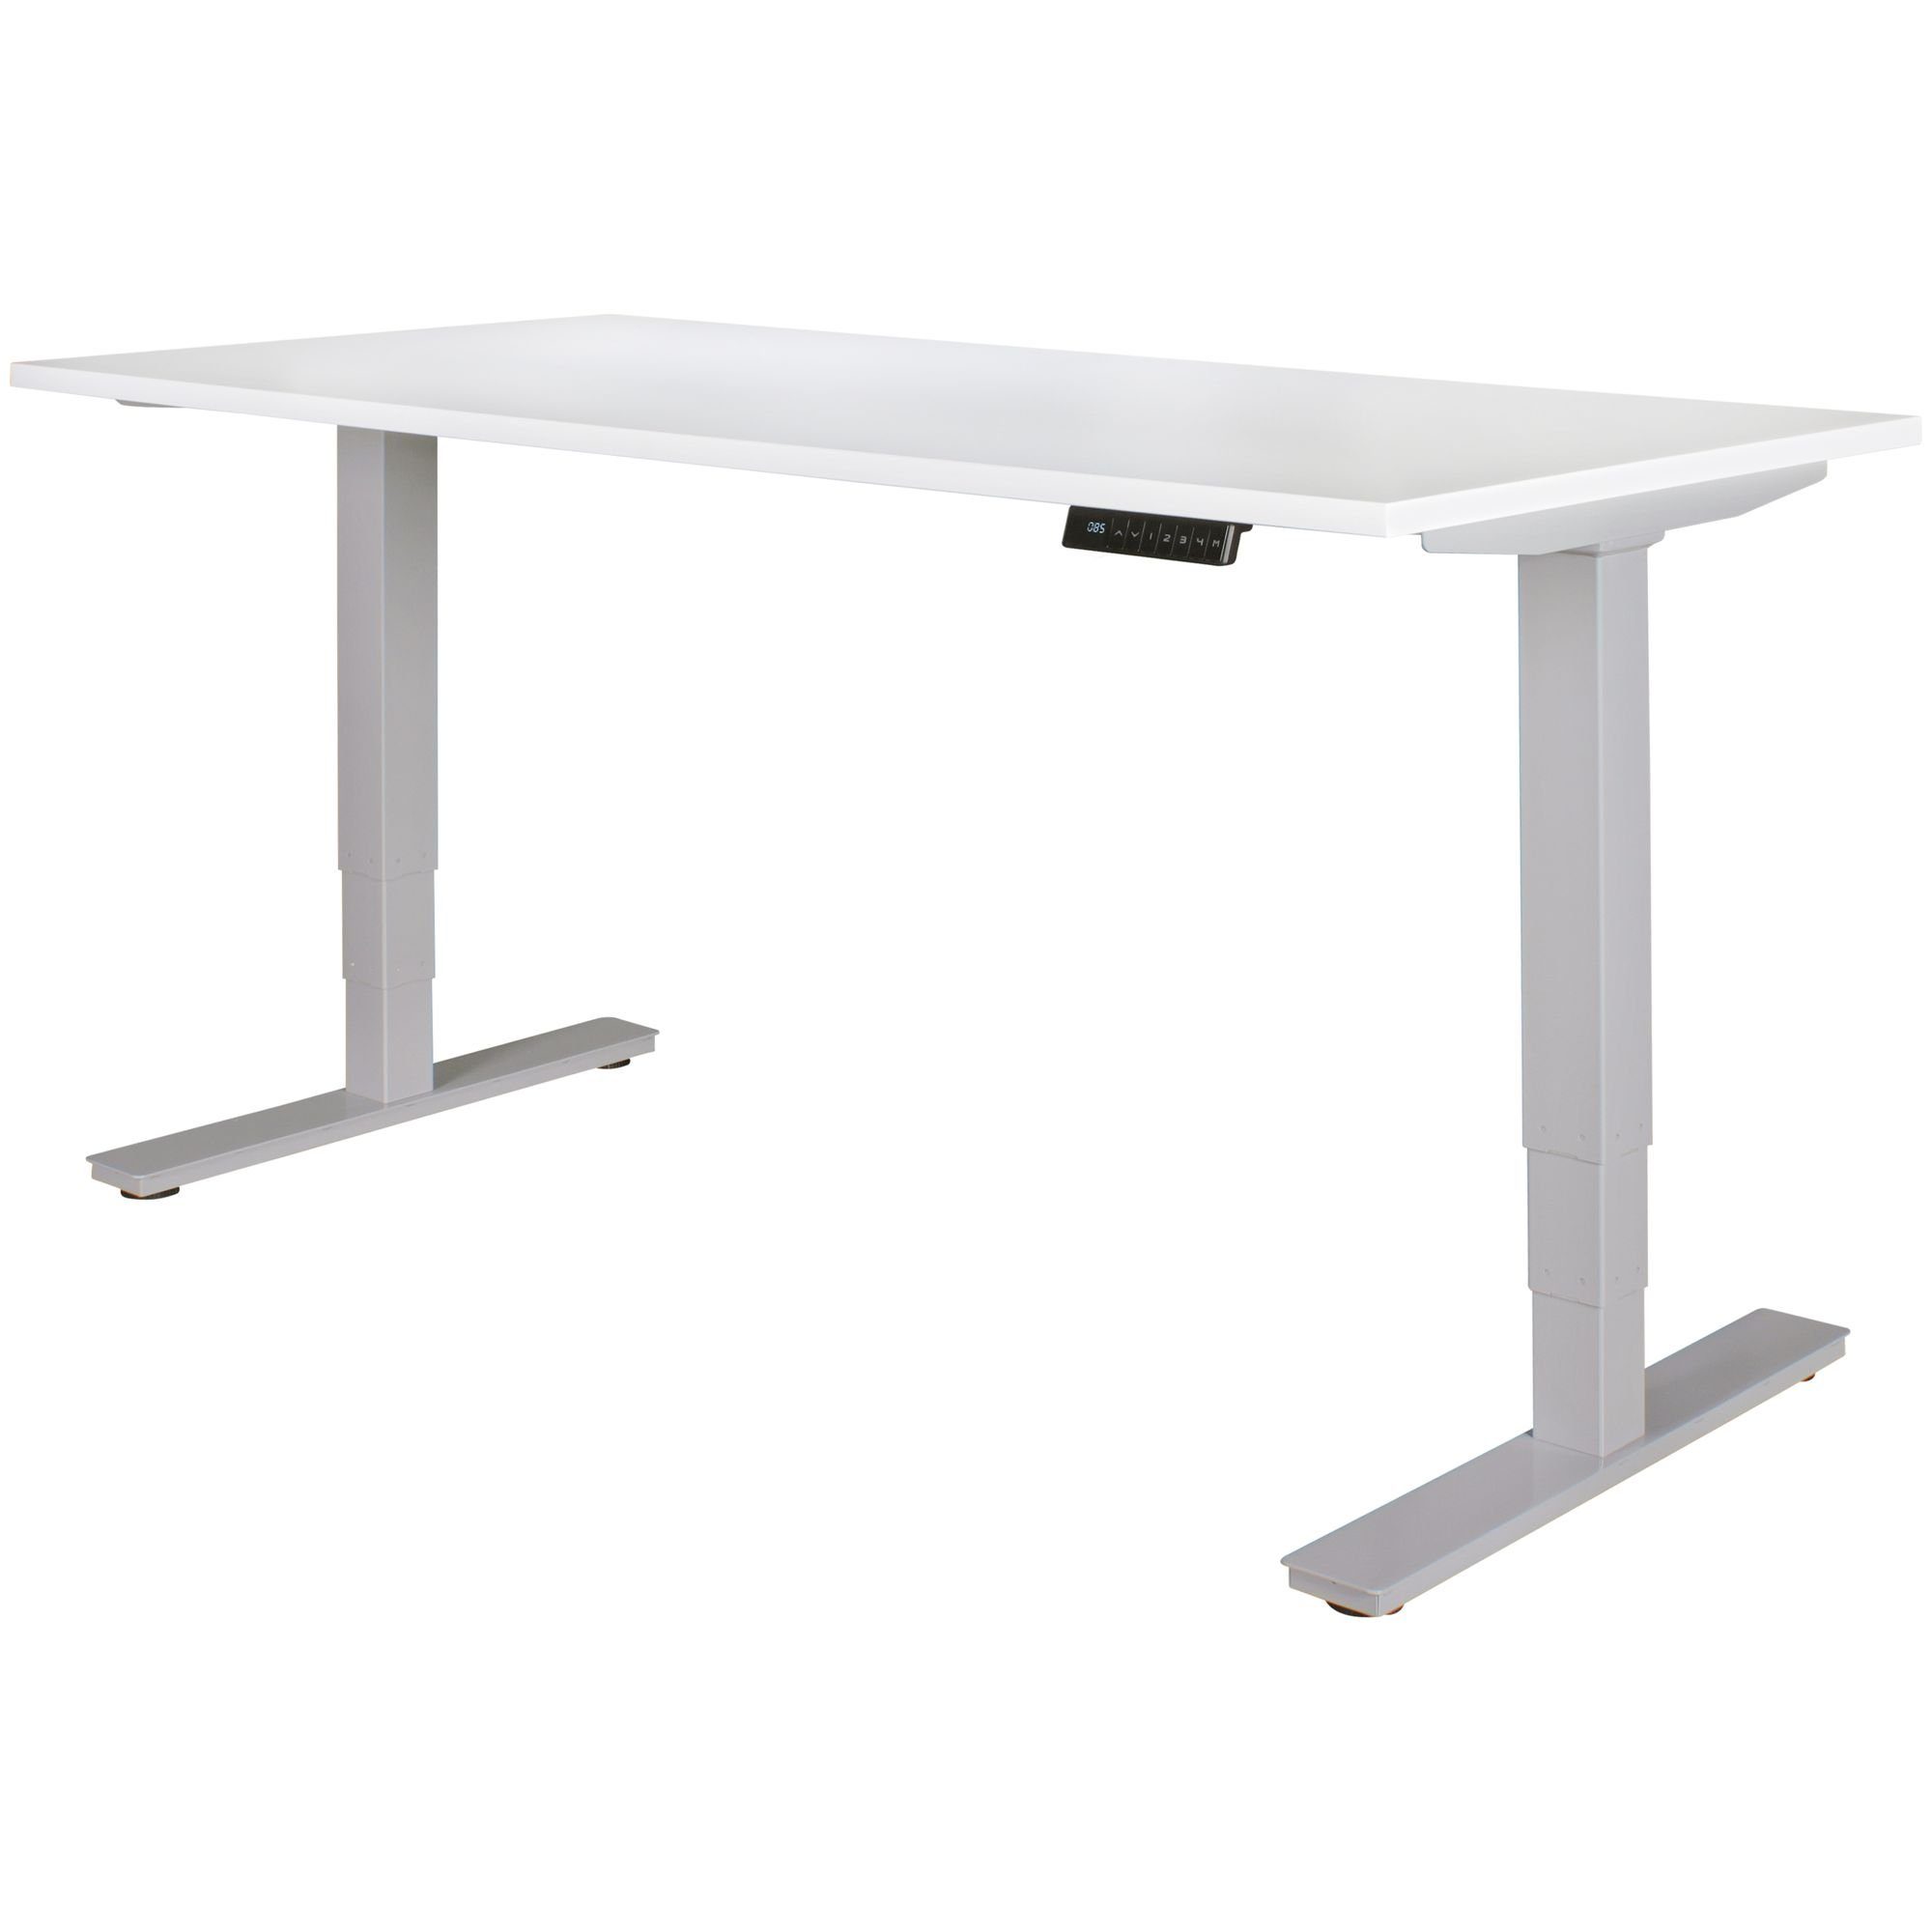 Silber KADIMA DESIGN - Schreibtischgestell im Stehen/Sitzen Tischgestell Ergonomisch Elektrisches